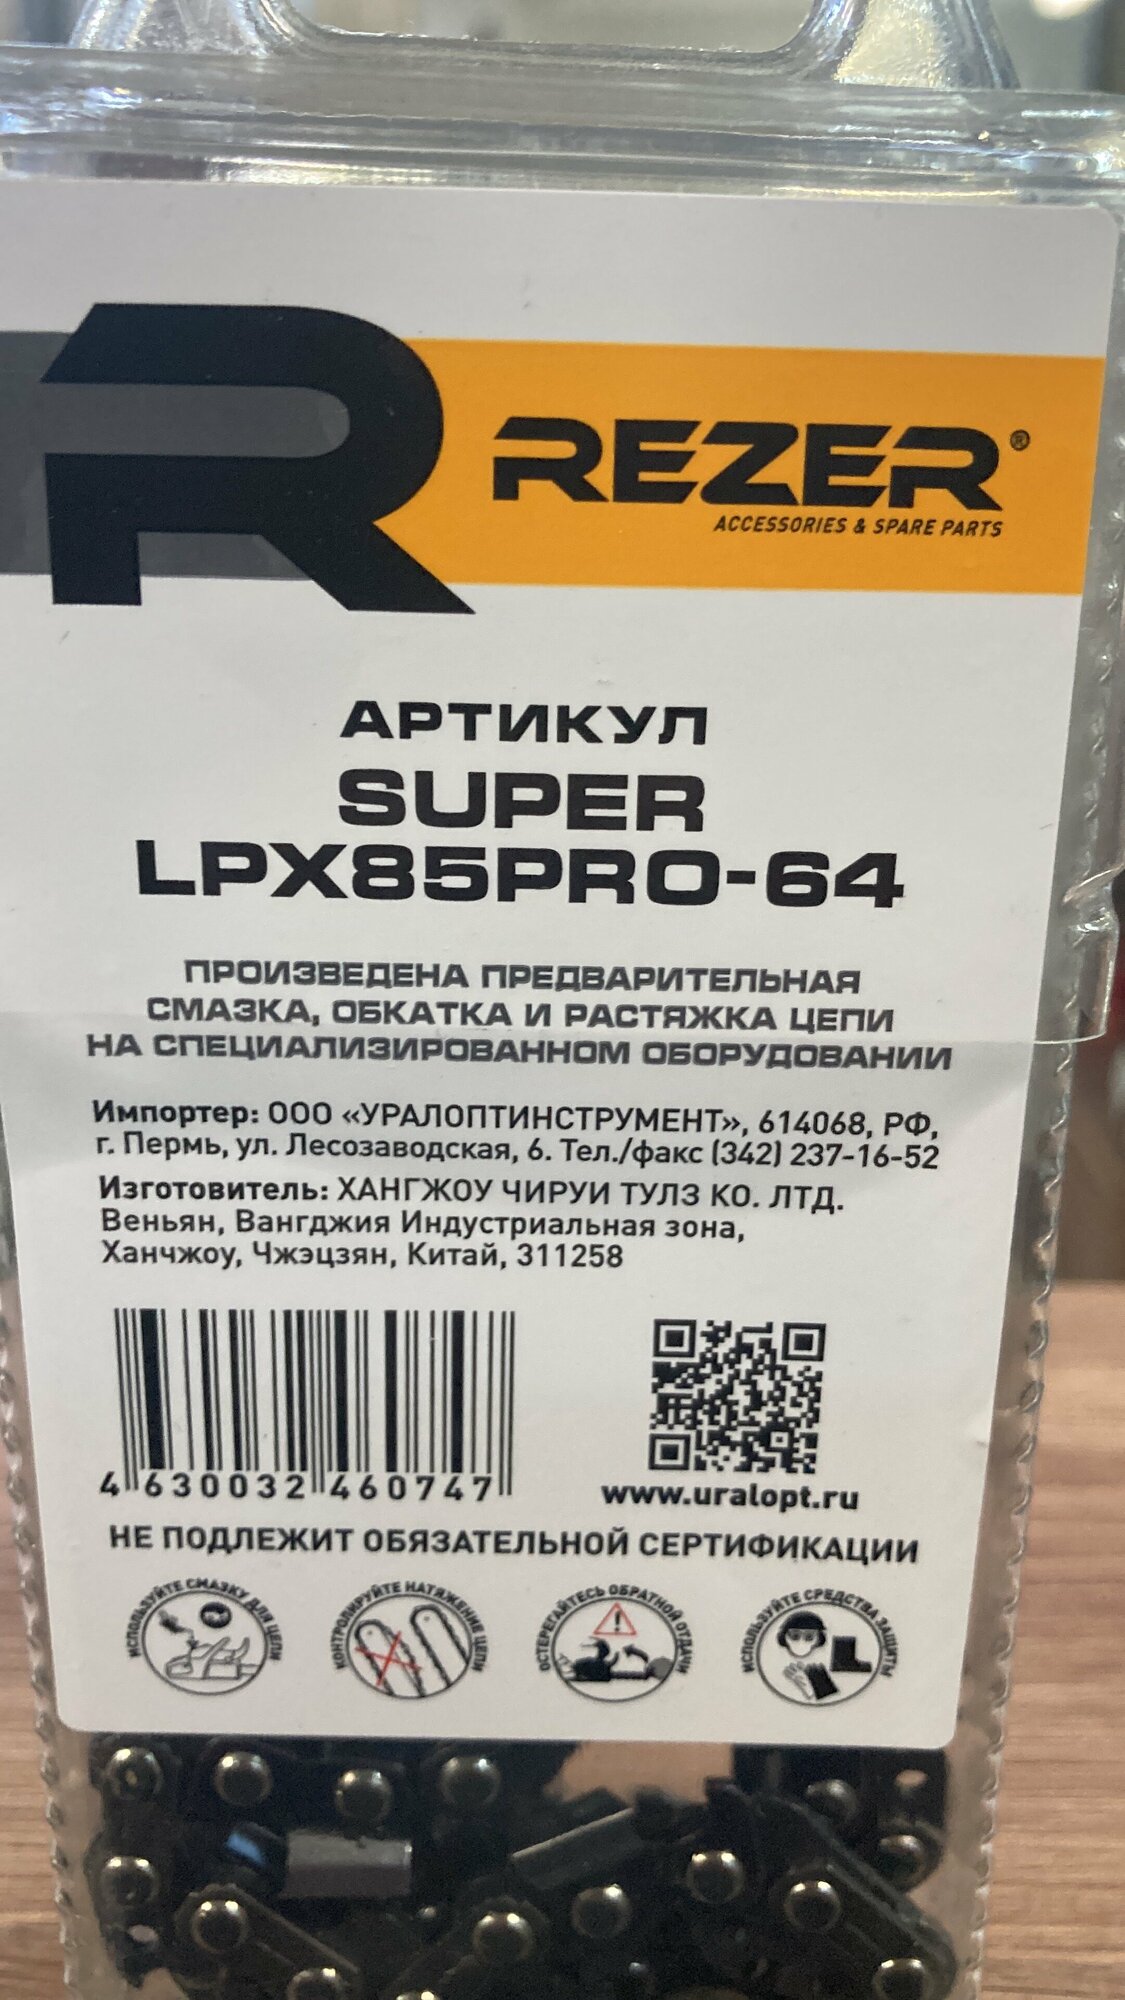 Цепь Rezer Super LPX85 Pro-64 15